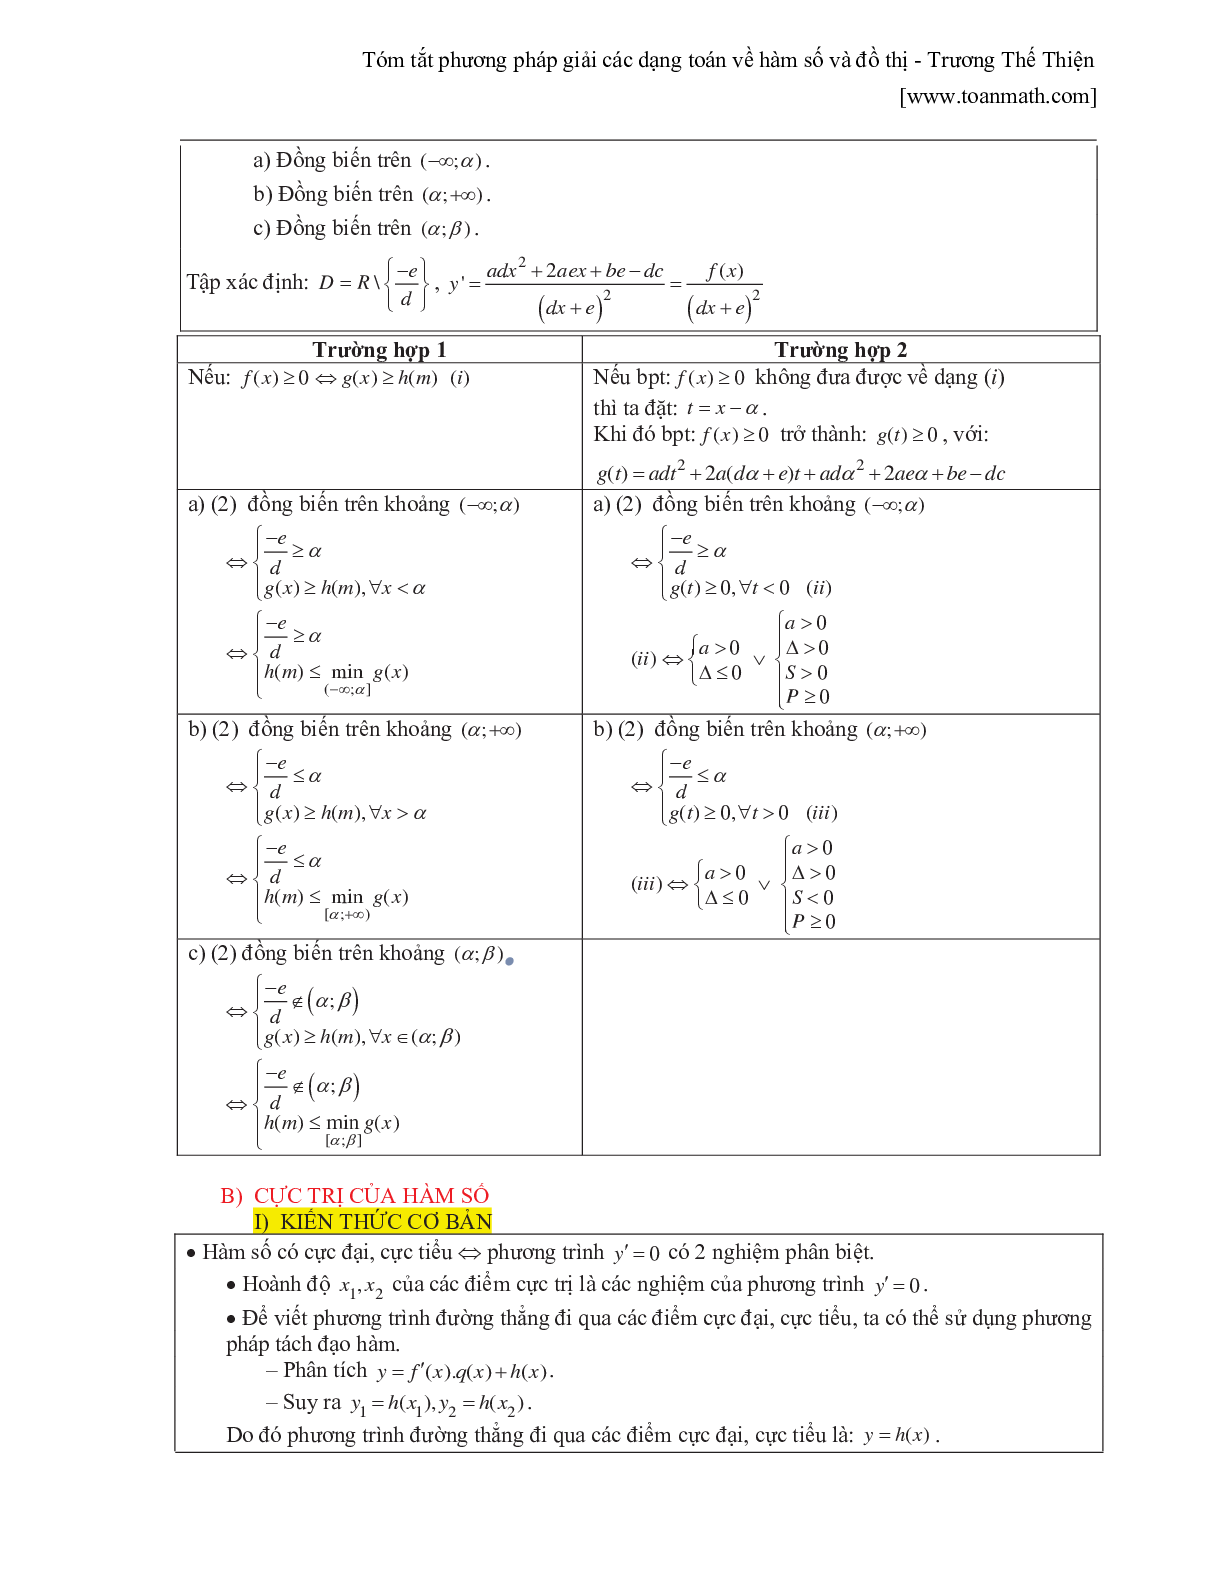 Tóm tắt phương pháp giải các dạng toán về hàm số và đồ thị (trang 3)